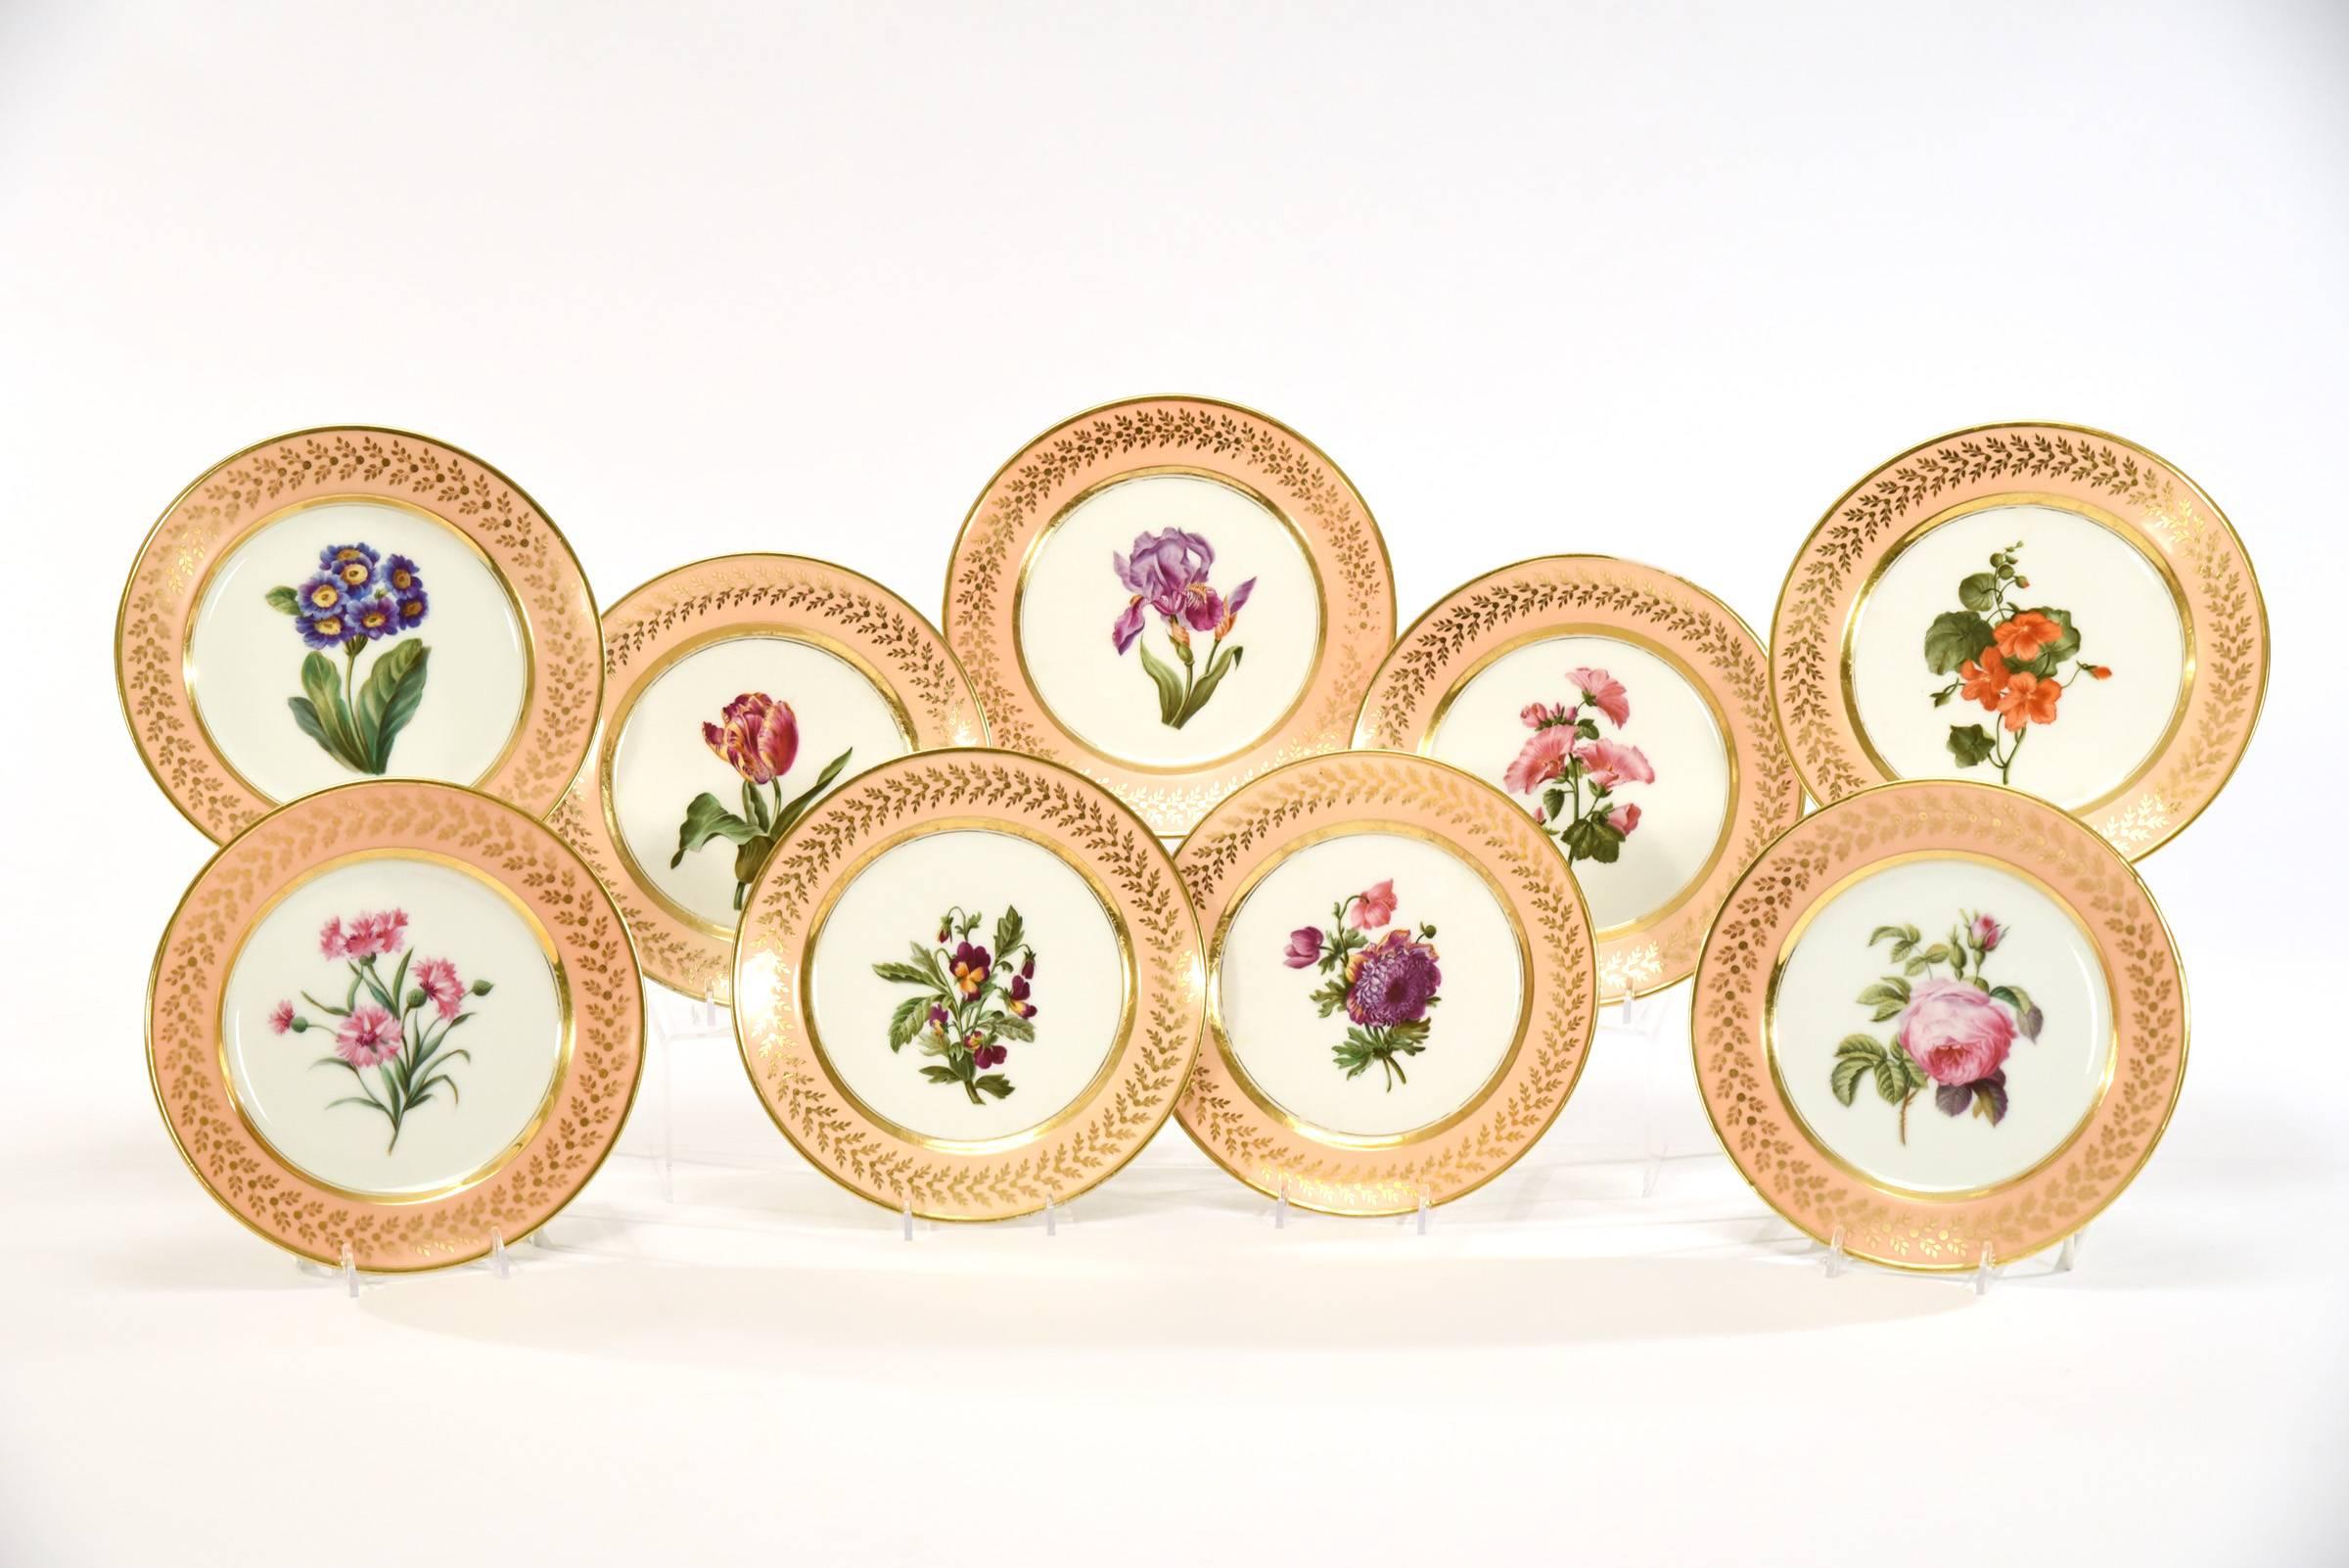 Dieses schlichte und elegante Set aus botanischen Tellern und Servierplatten von Ancienne Maison Dagoty, Edourd Honore, zeigt die Schönheit und Präzision der handgemalten Blumenmuster. Diese würden eine atemberaubende Anzeige mit einzigartigen